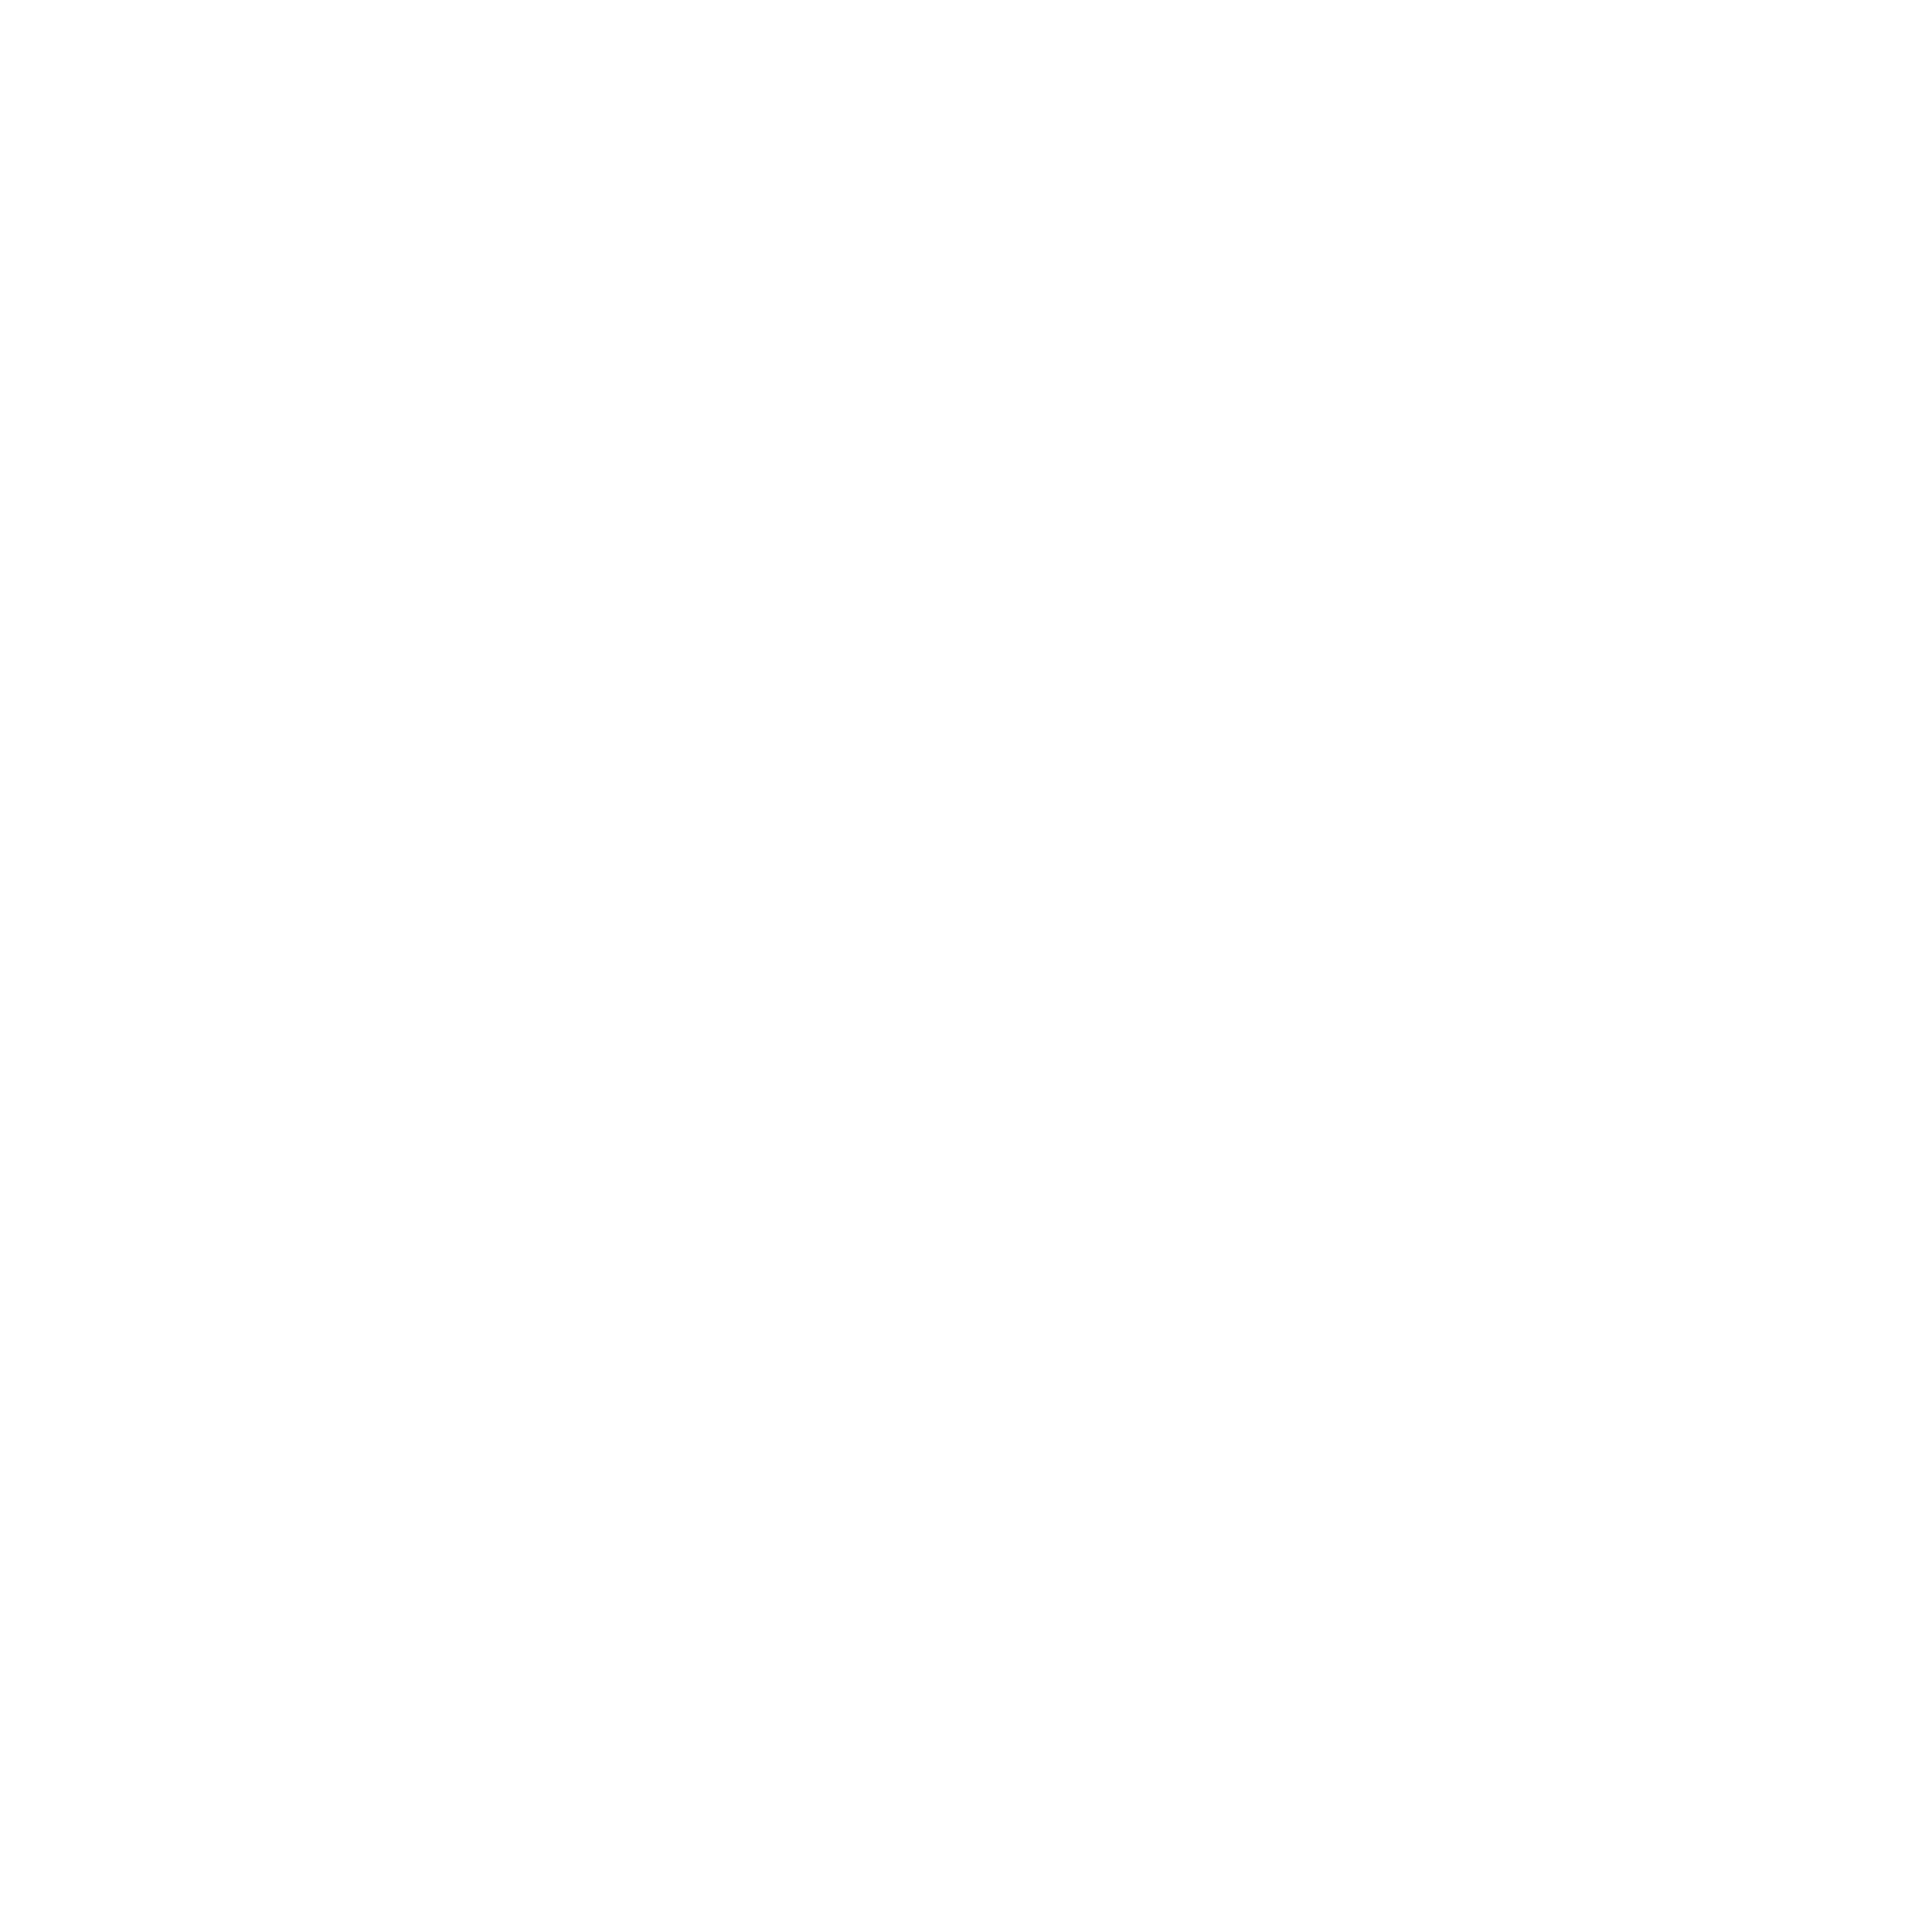 BPM-0124-Retail-WHT_Family Video